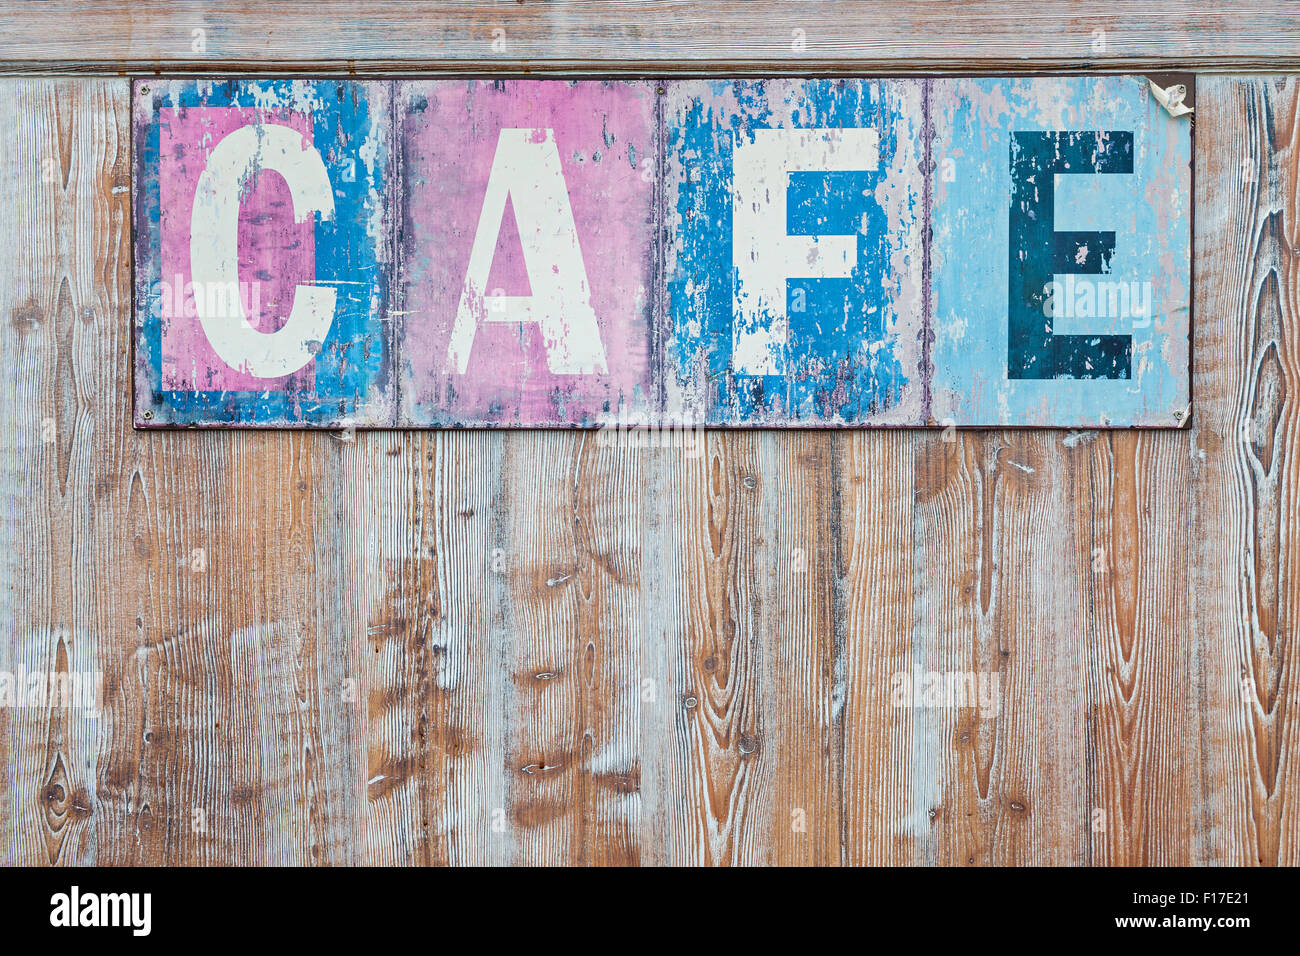 Vecchio weathered cafe sign on distressed rustica parete in legno Foto Stock